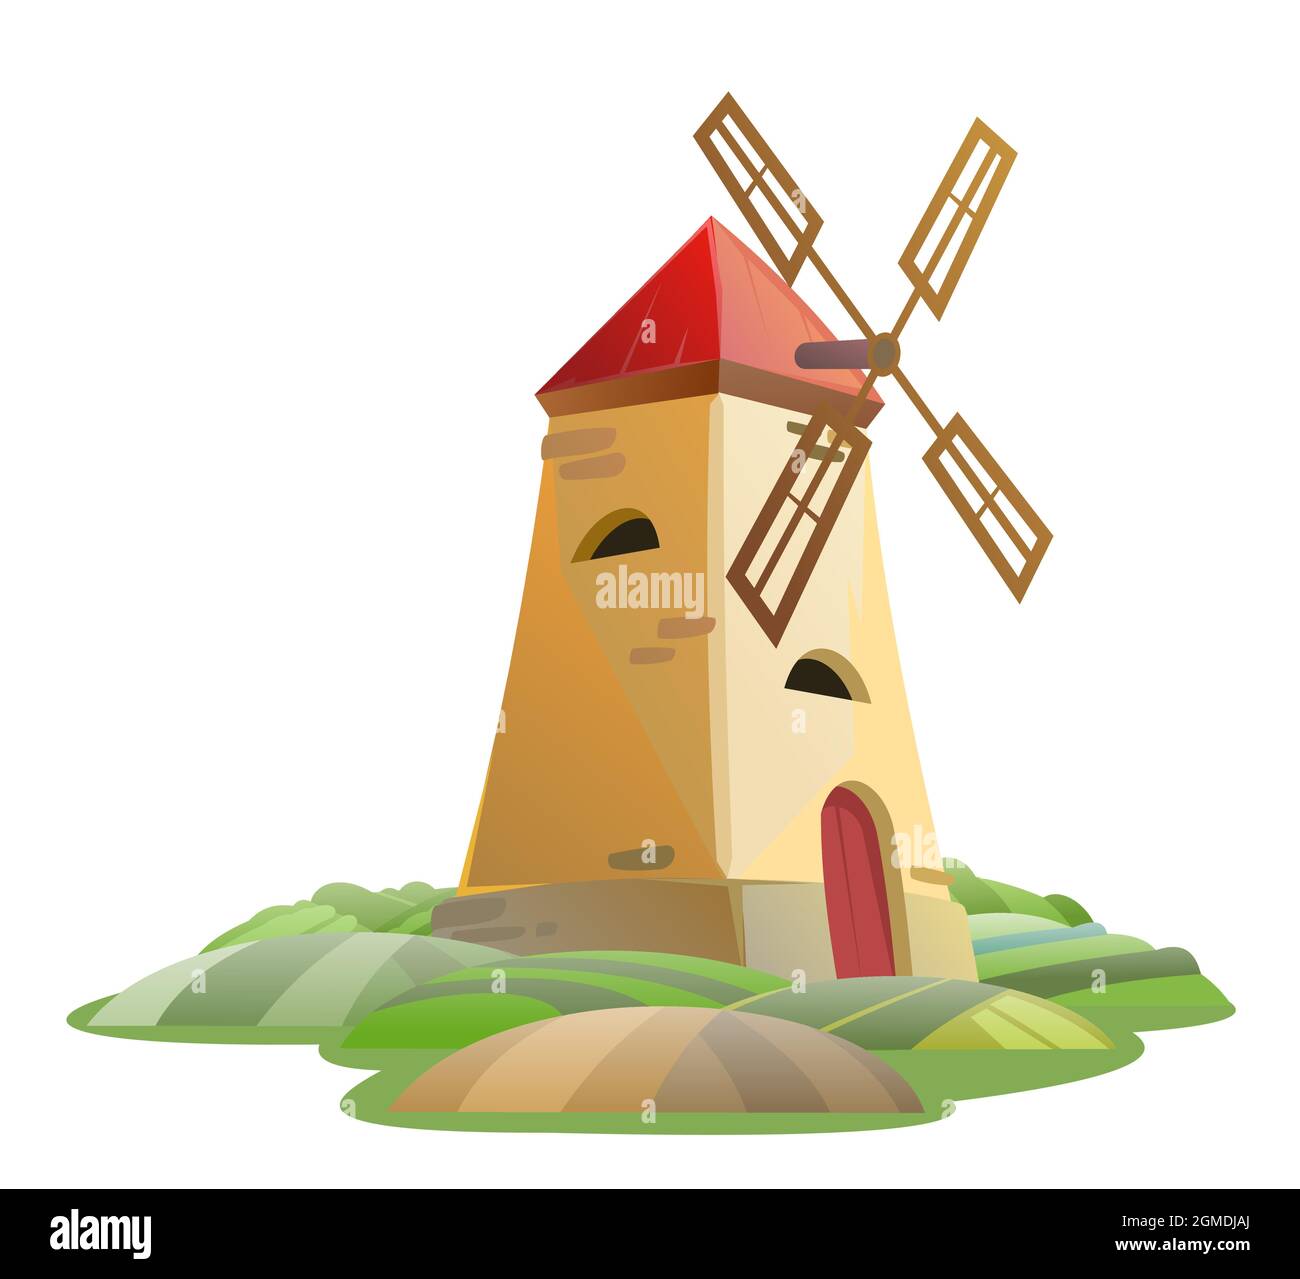 Alte Windmühle. Gartenhügel. Ländliche Farmlandschaft. Niedliche lustige Cartoon-Design Illustration. Isoliert auf weißem Hintergrund. Flacher Style. Vektor. Stock Vektor